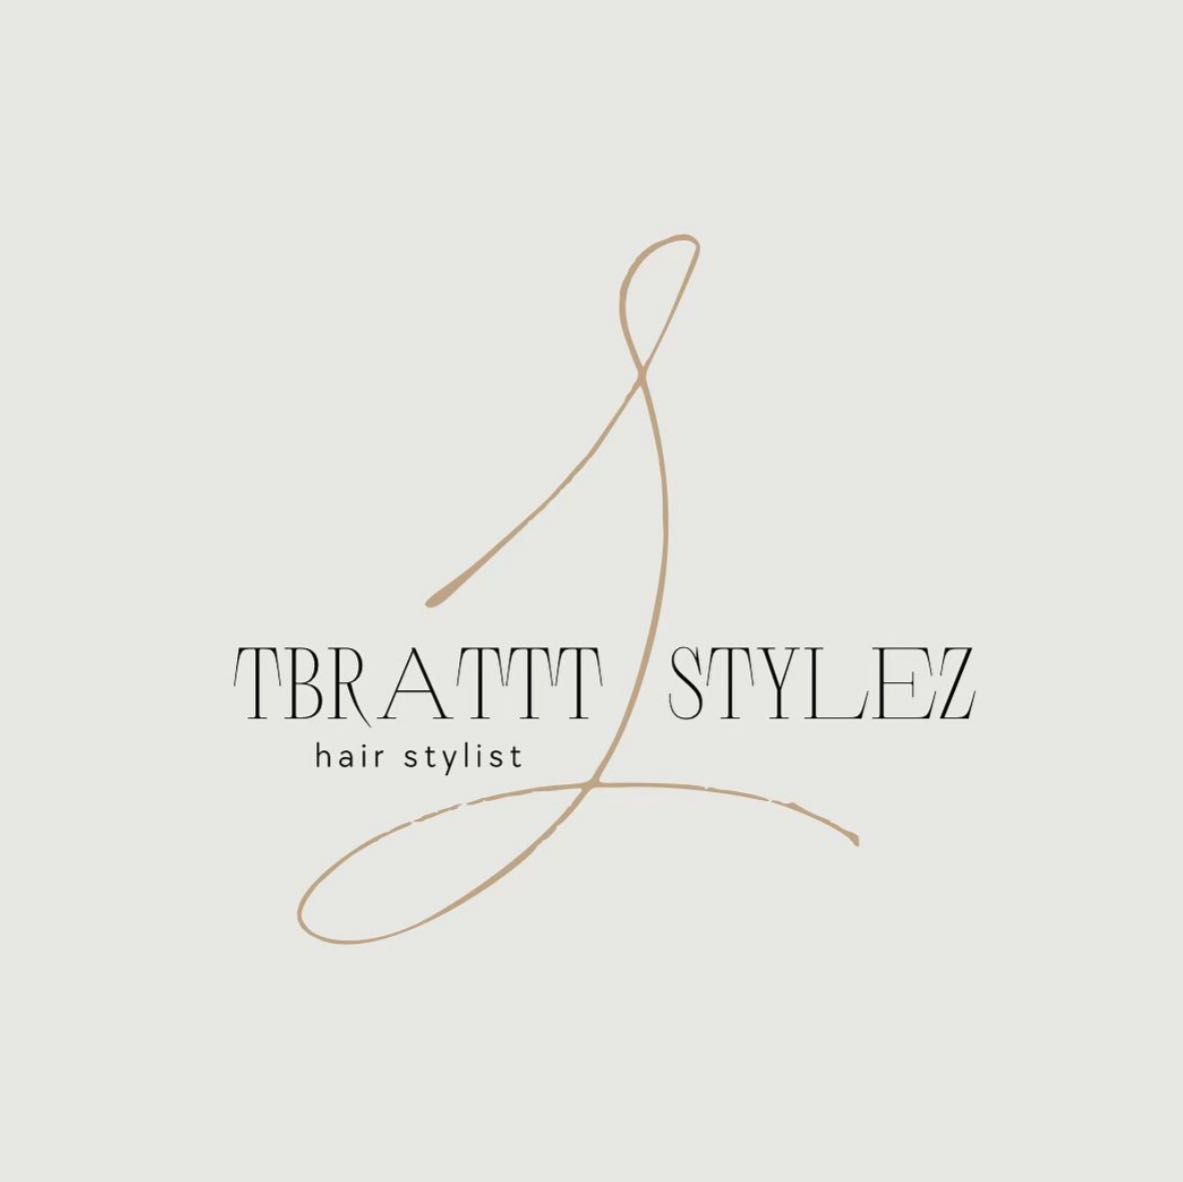 Tbrattt Stylez, 432 Austin Pl, New York, 10455